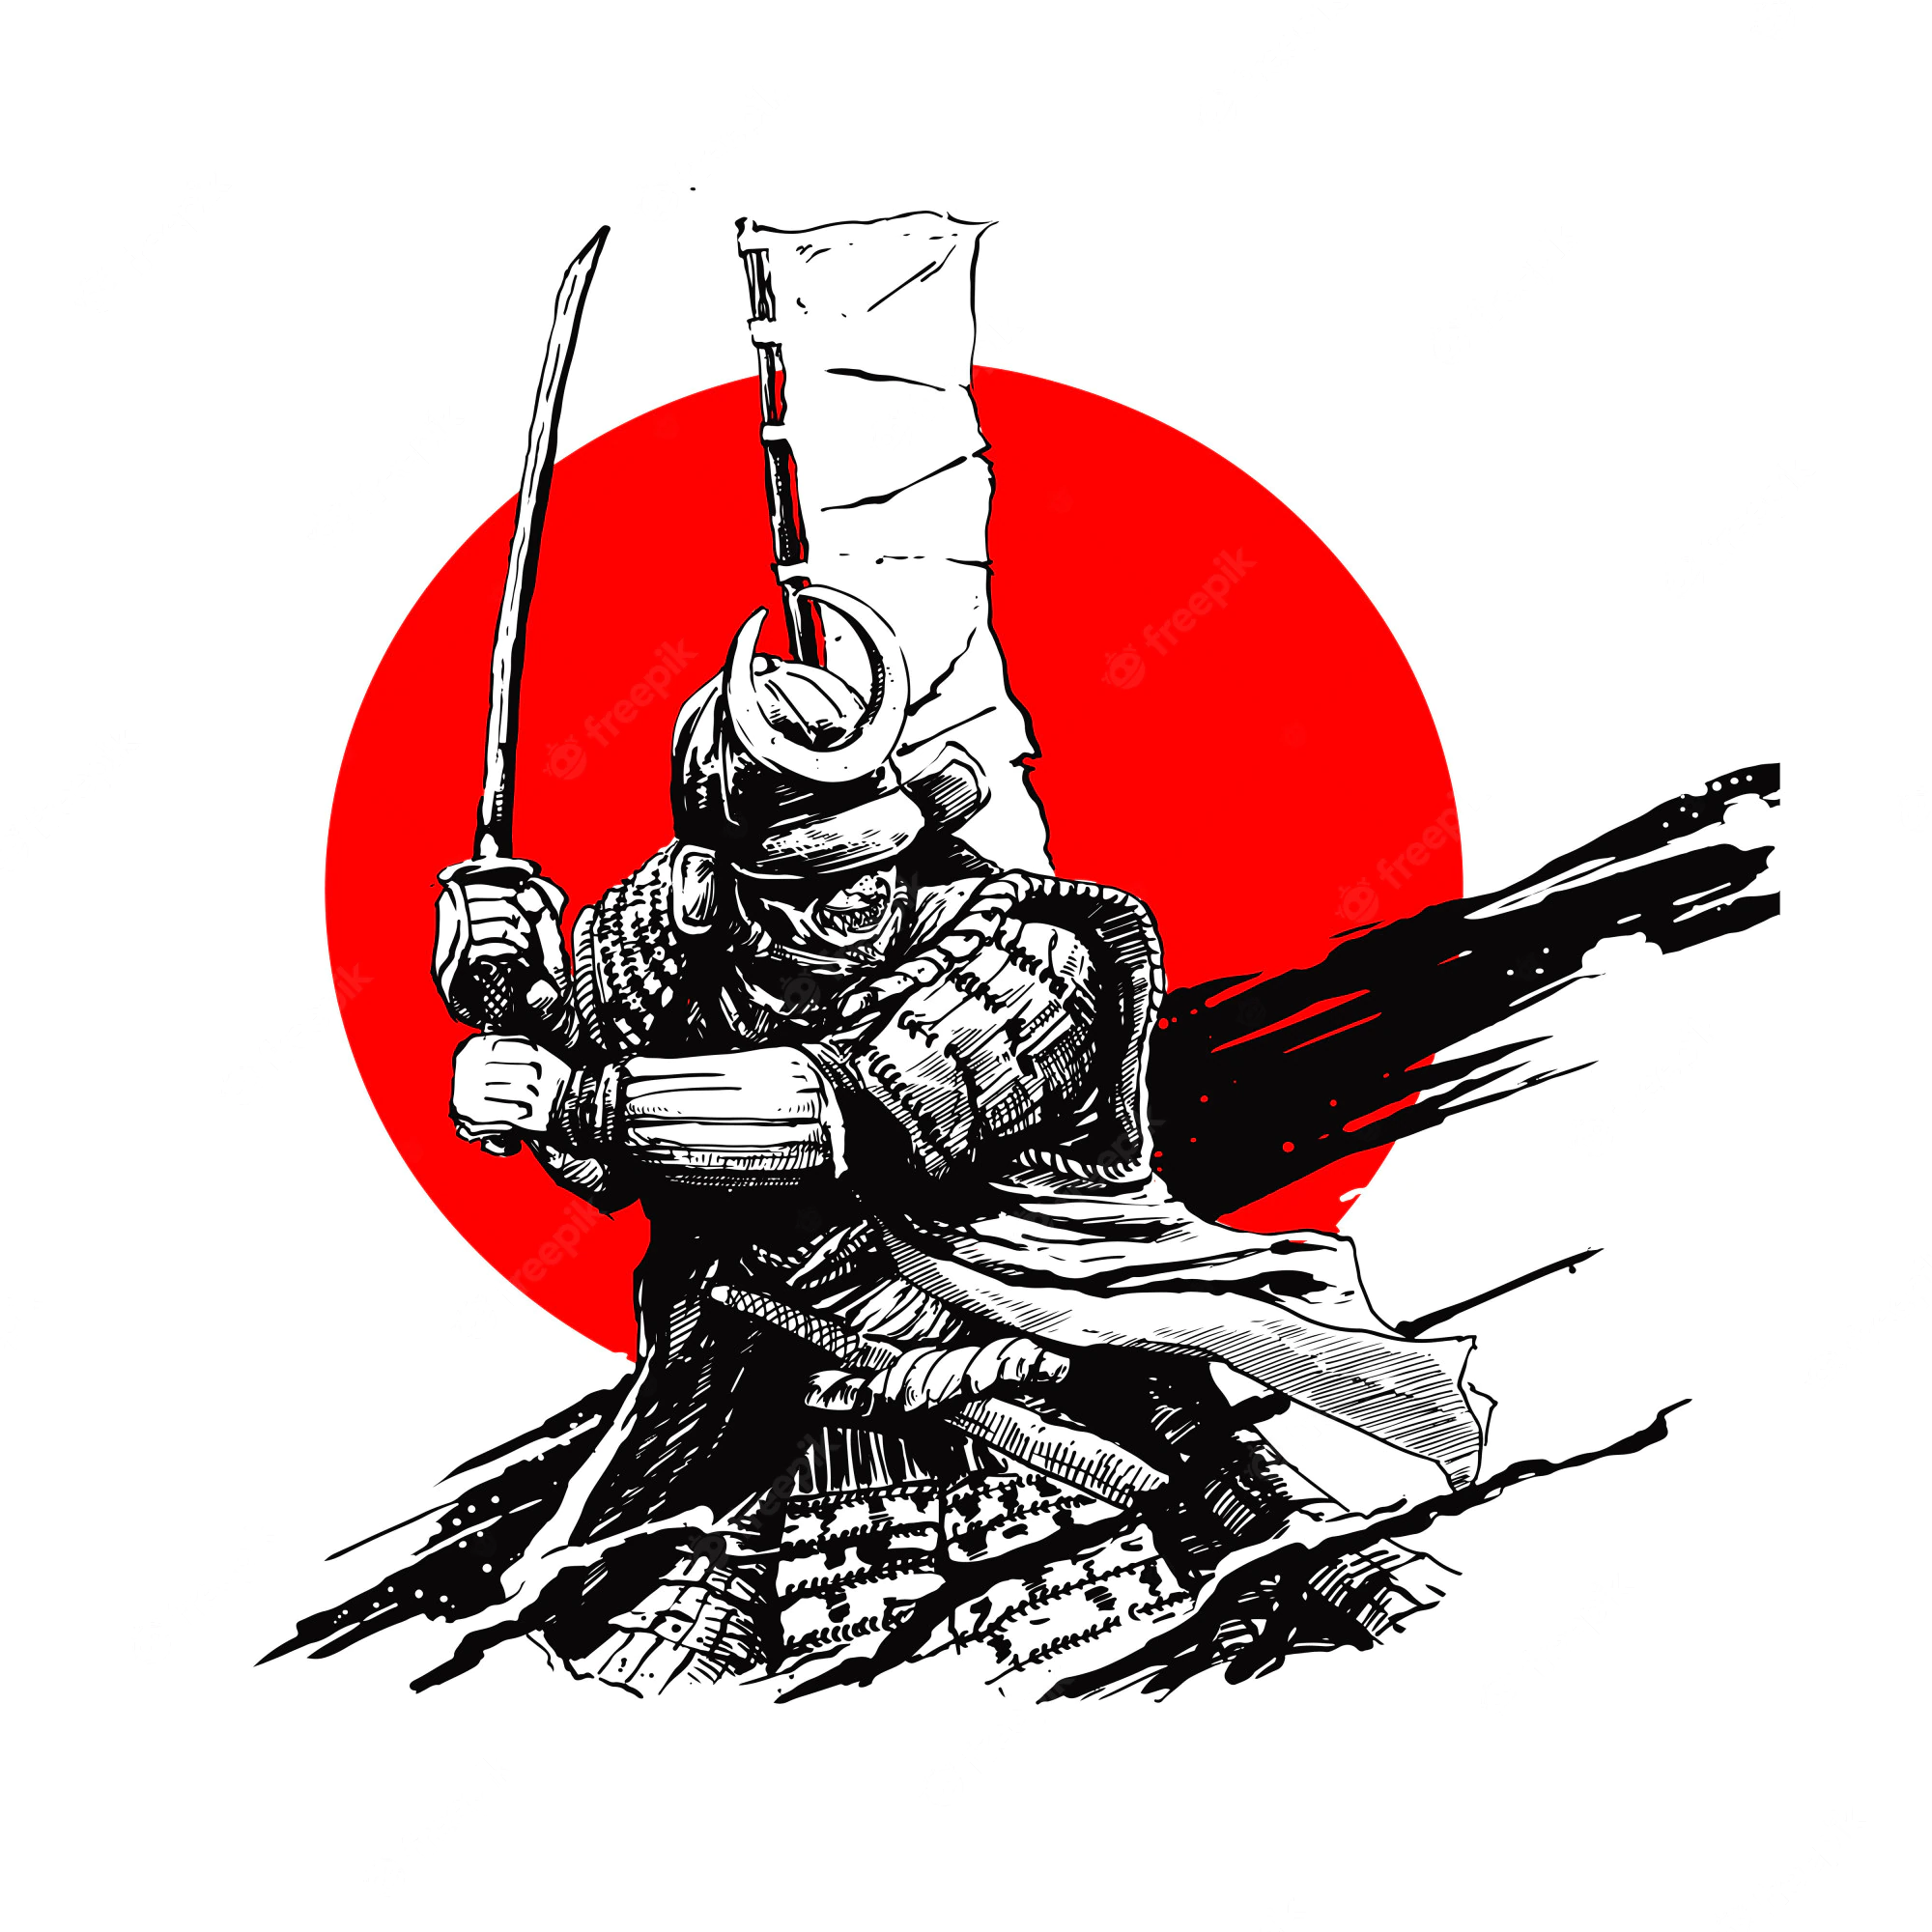 Samurai Nhật Bản là hình tượng nổi tiếng toàn cầu